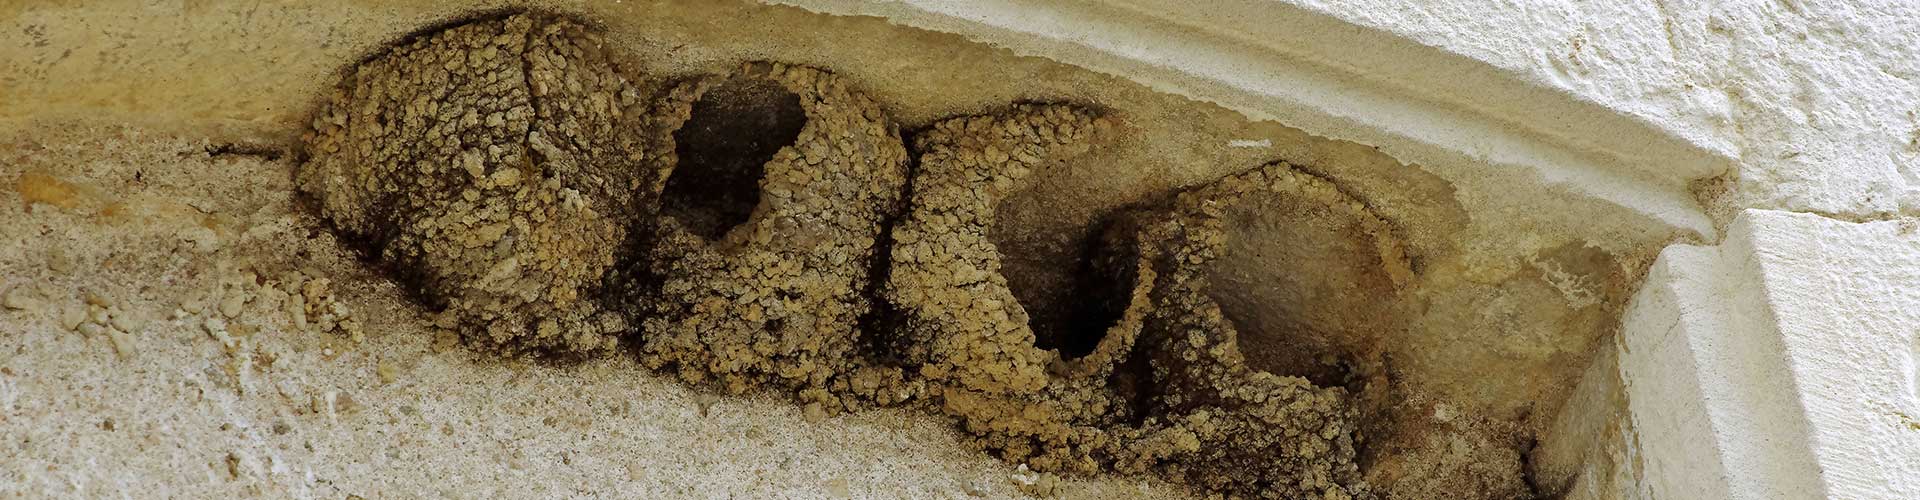 Nids d'hirondelles détruits © Danièle Jolivet CC BY 2.0